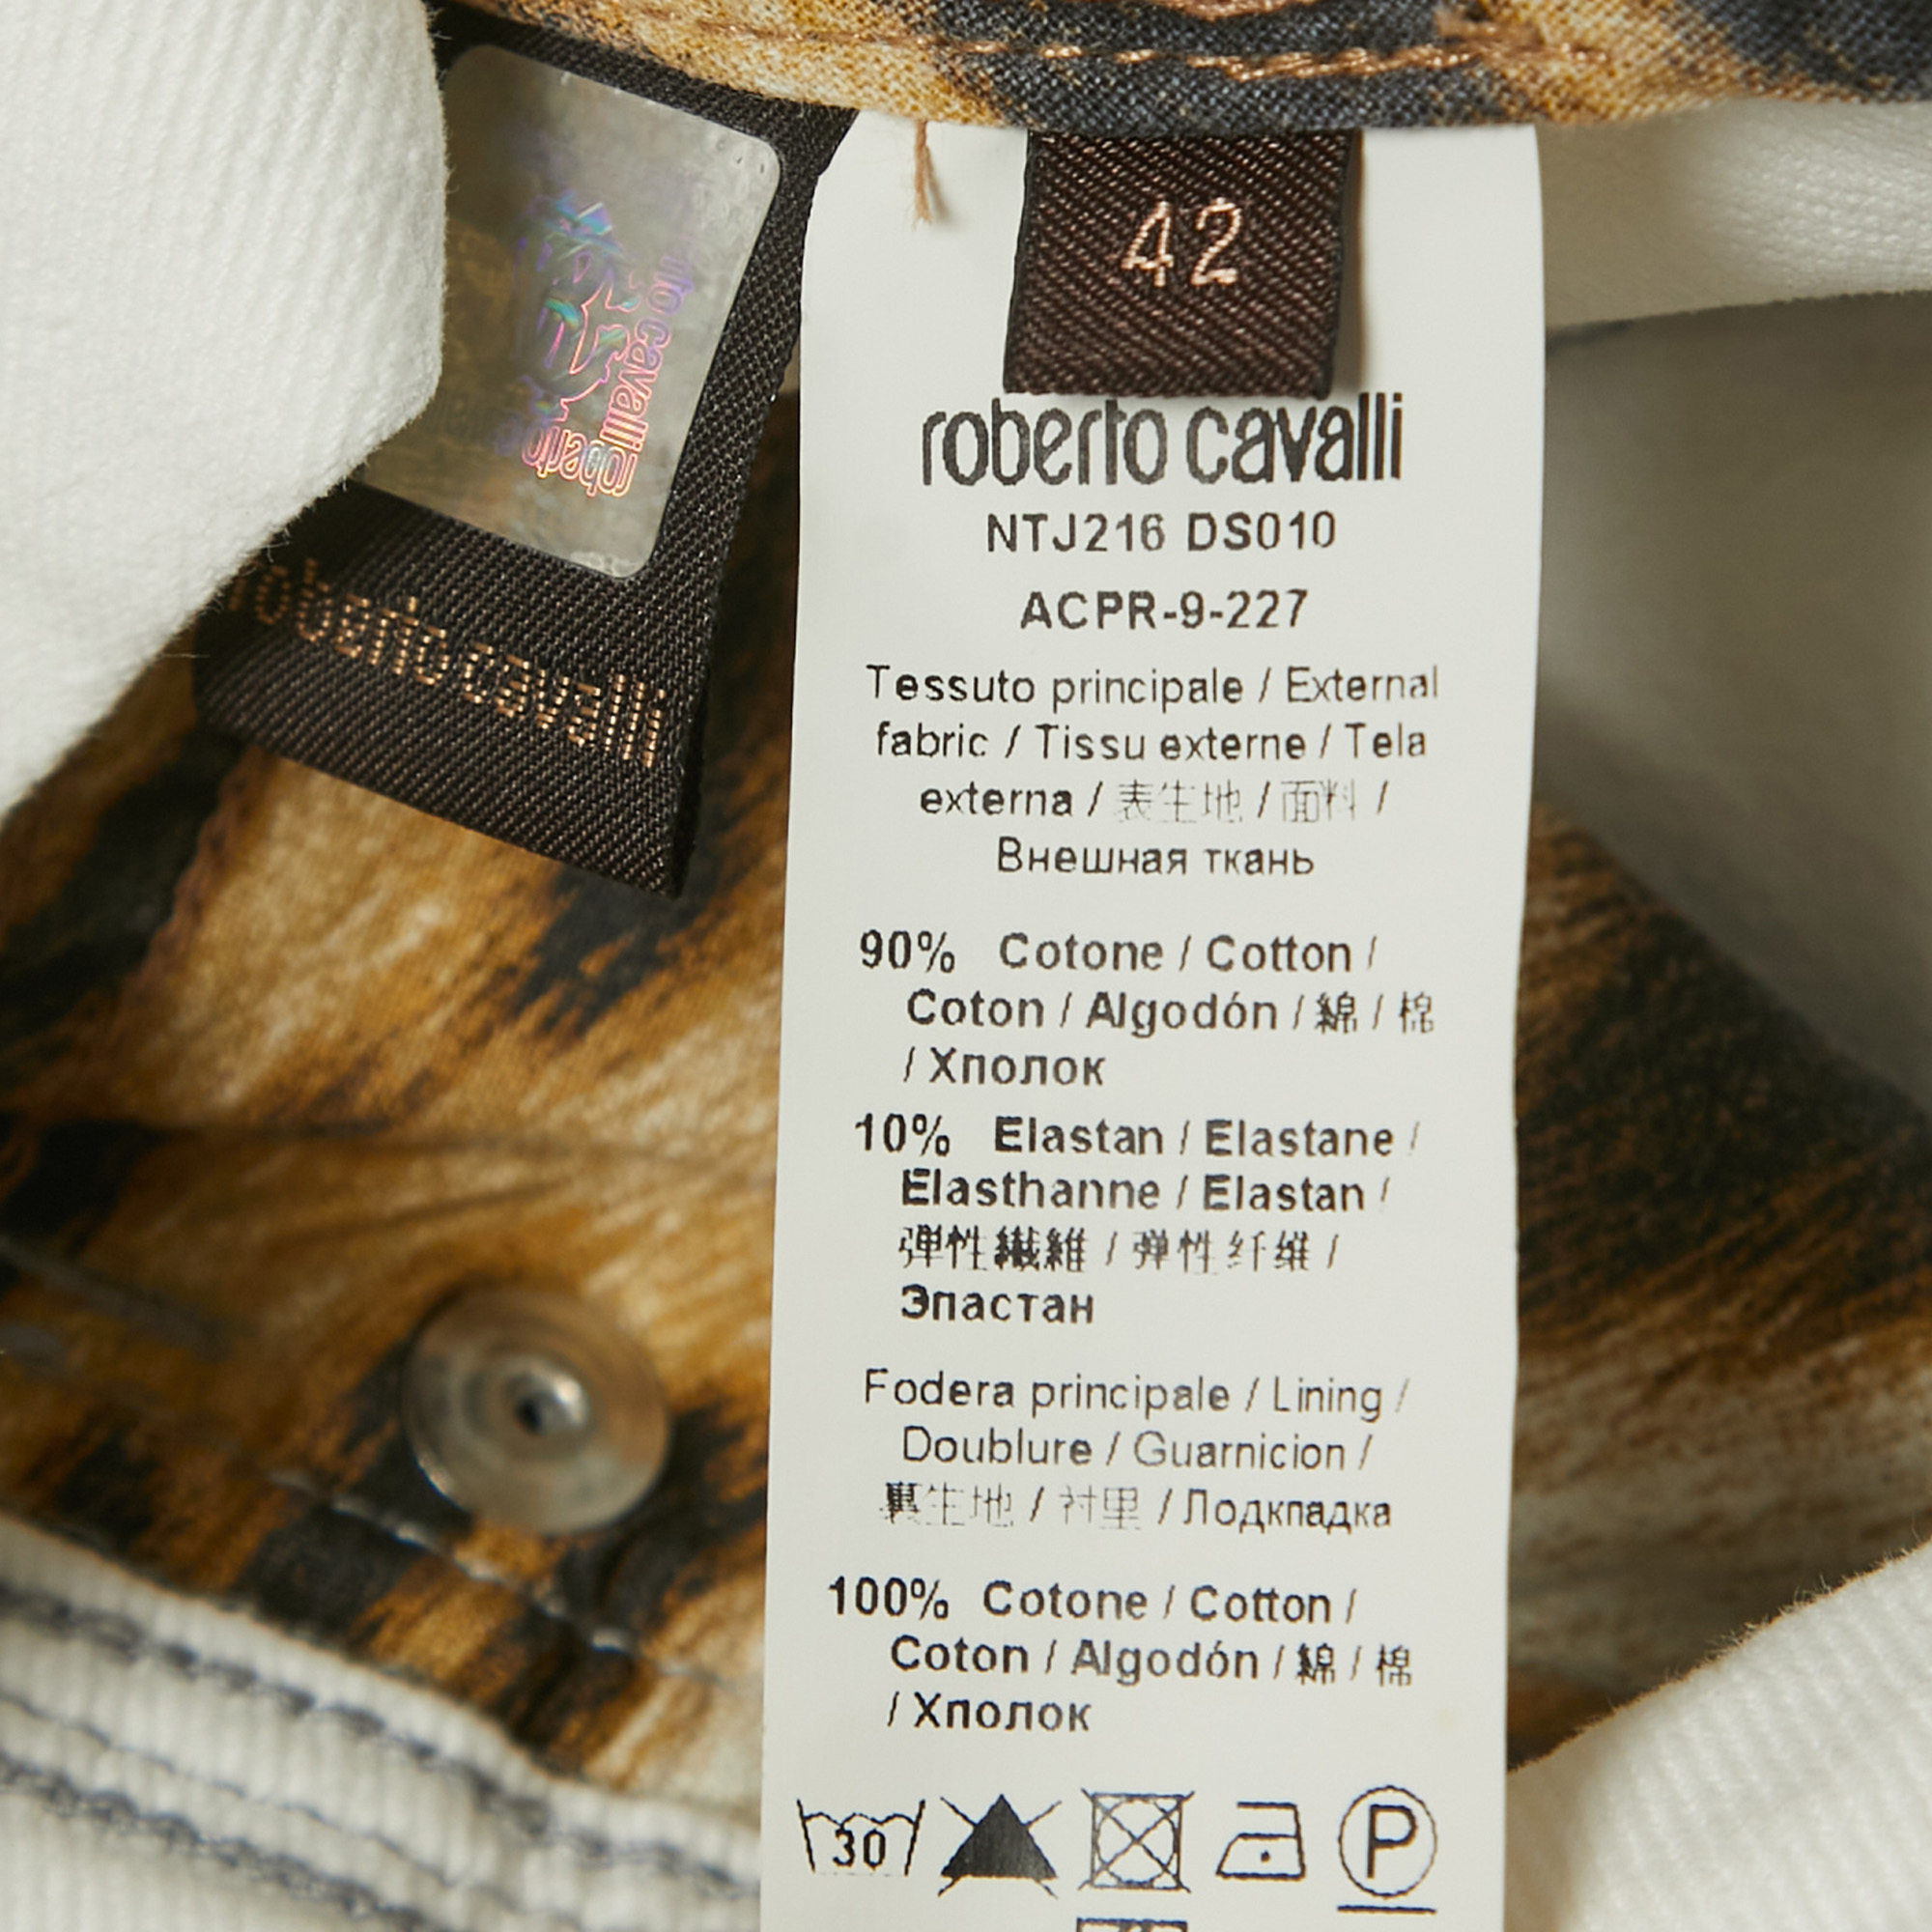 Roberto Cavalli White Patterned Denim Stitch Detailed  Jeans M Waist 30